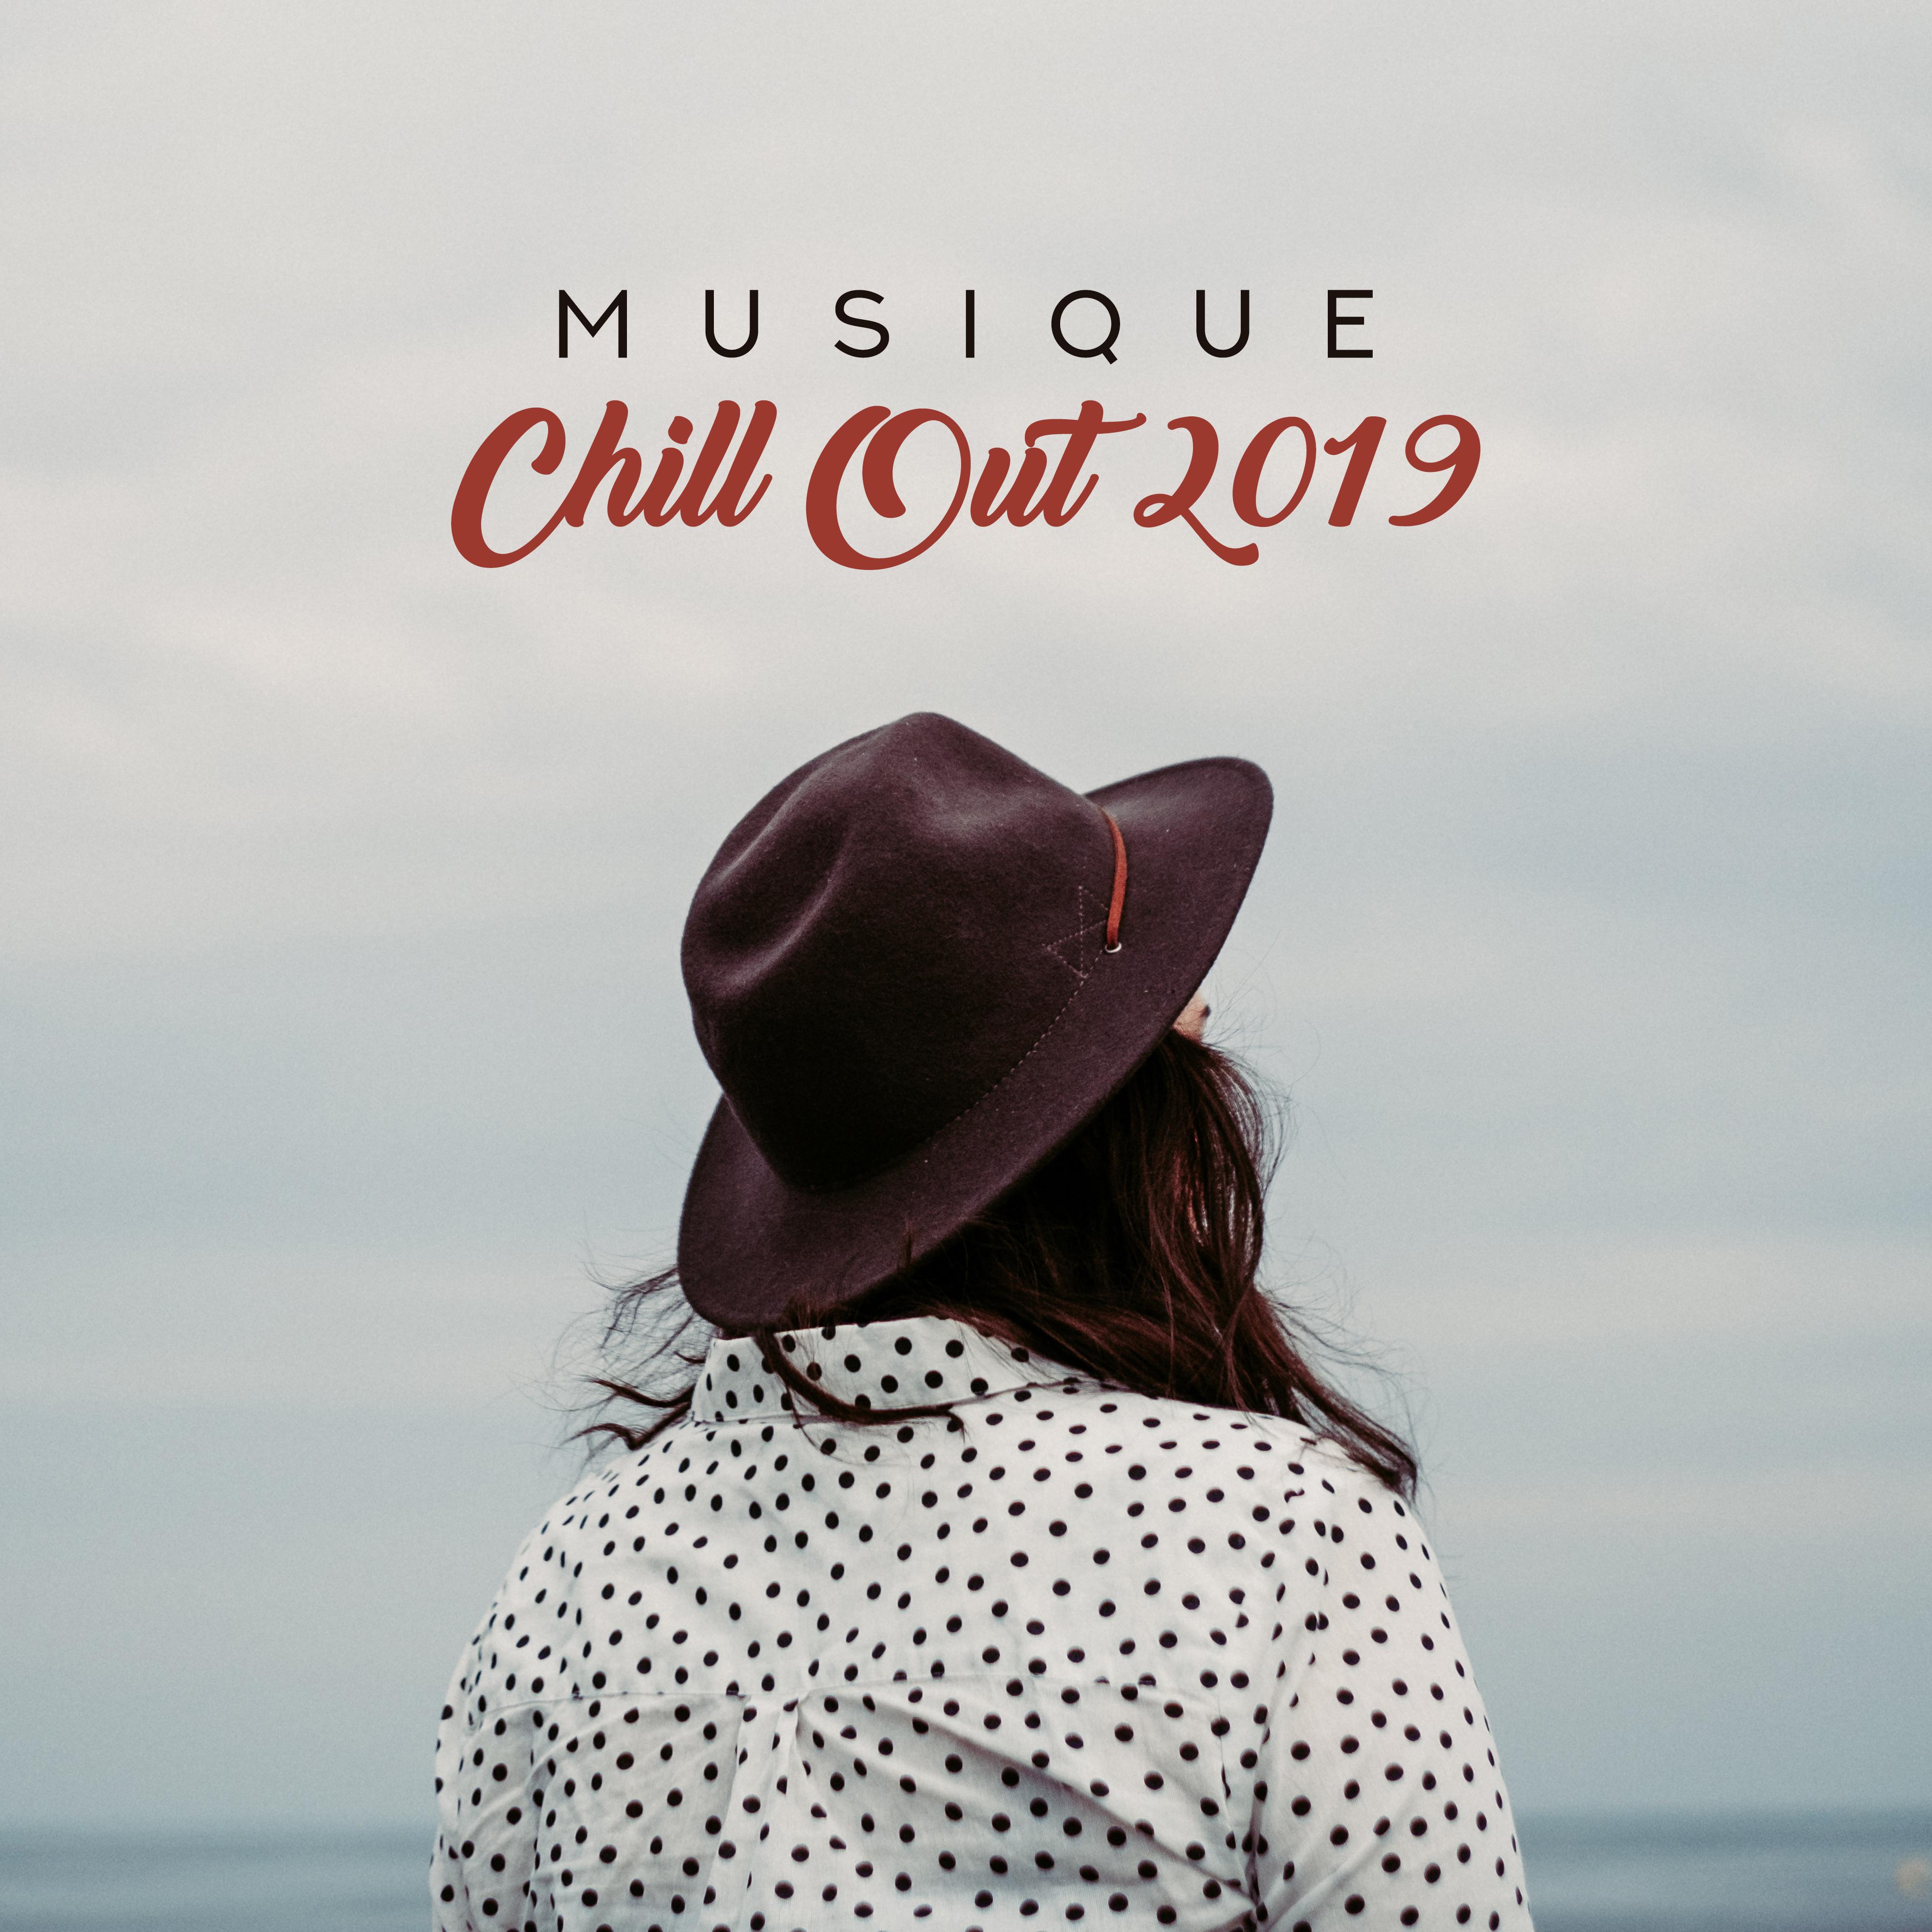 Musique Chill Out 2019 É lectro Chillout pour le Repos, la Relaxation et le Soulagement du Stress